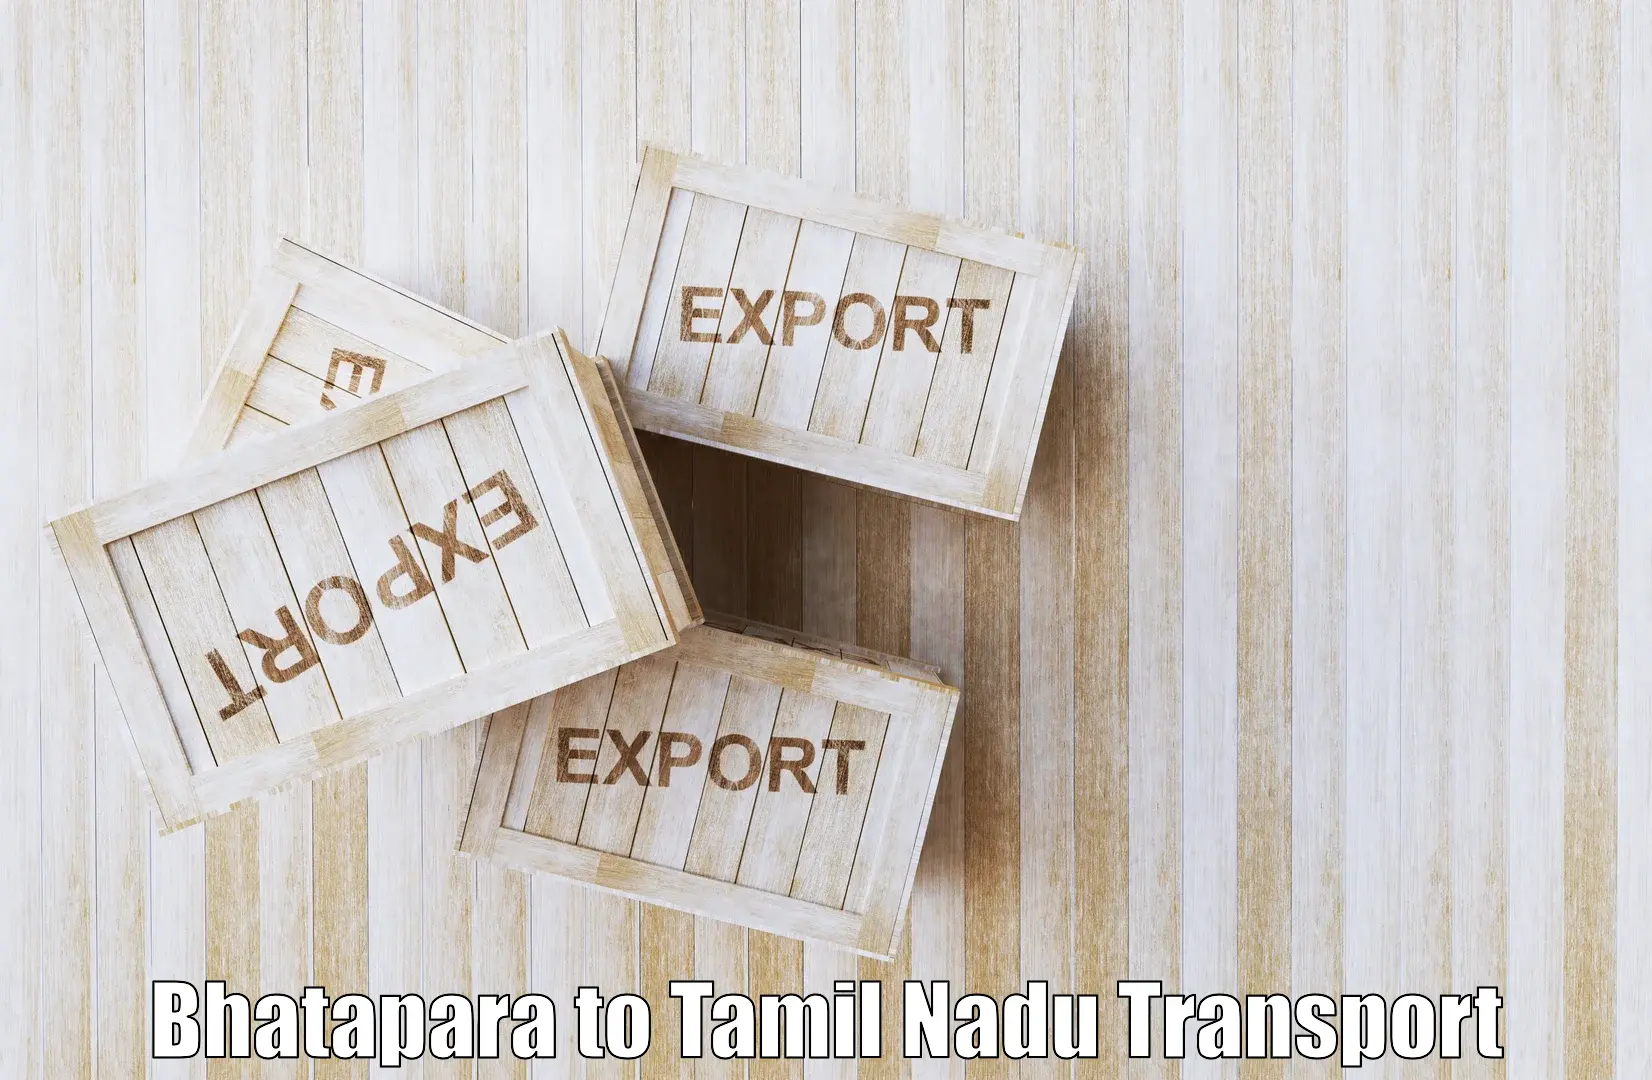 Vehicle transport services Bhatapara to Nandambakkam